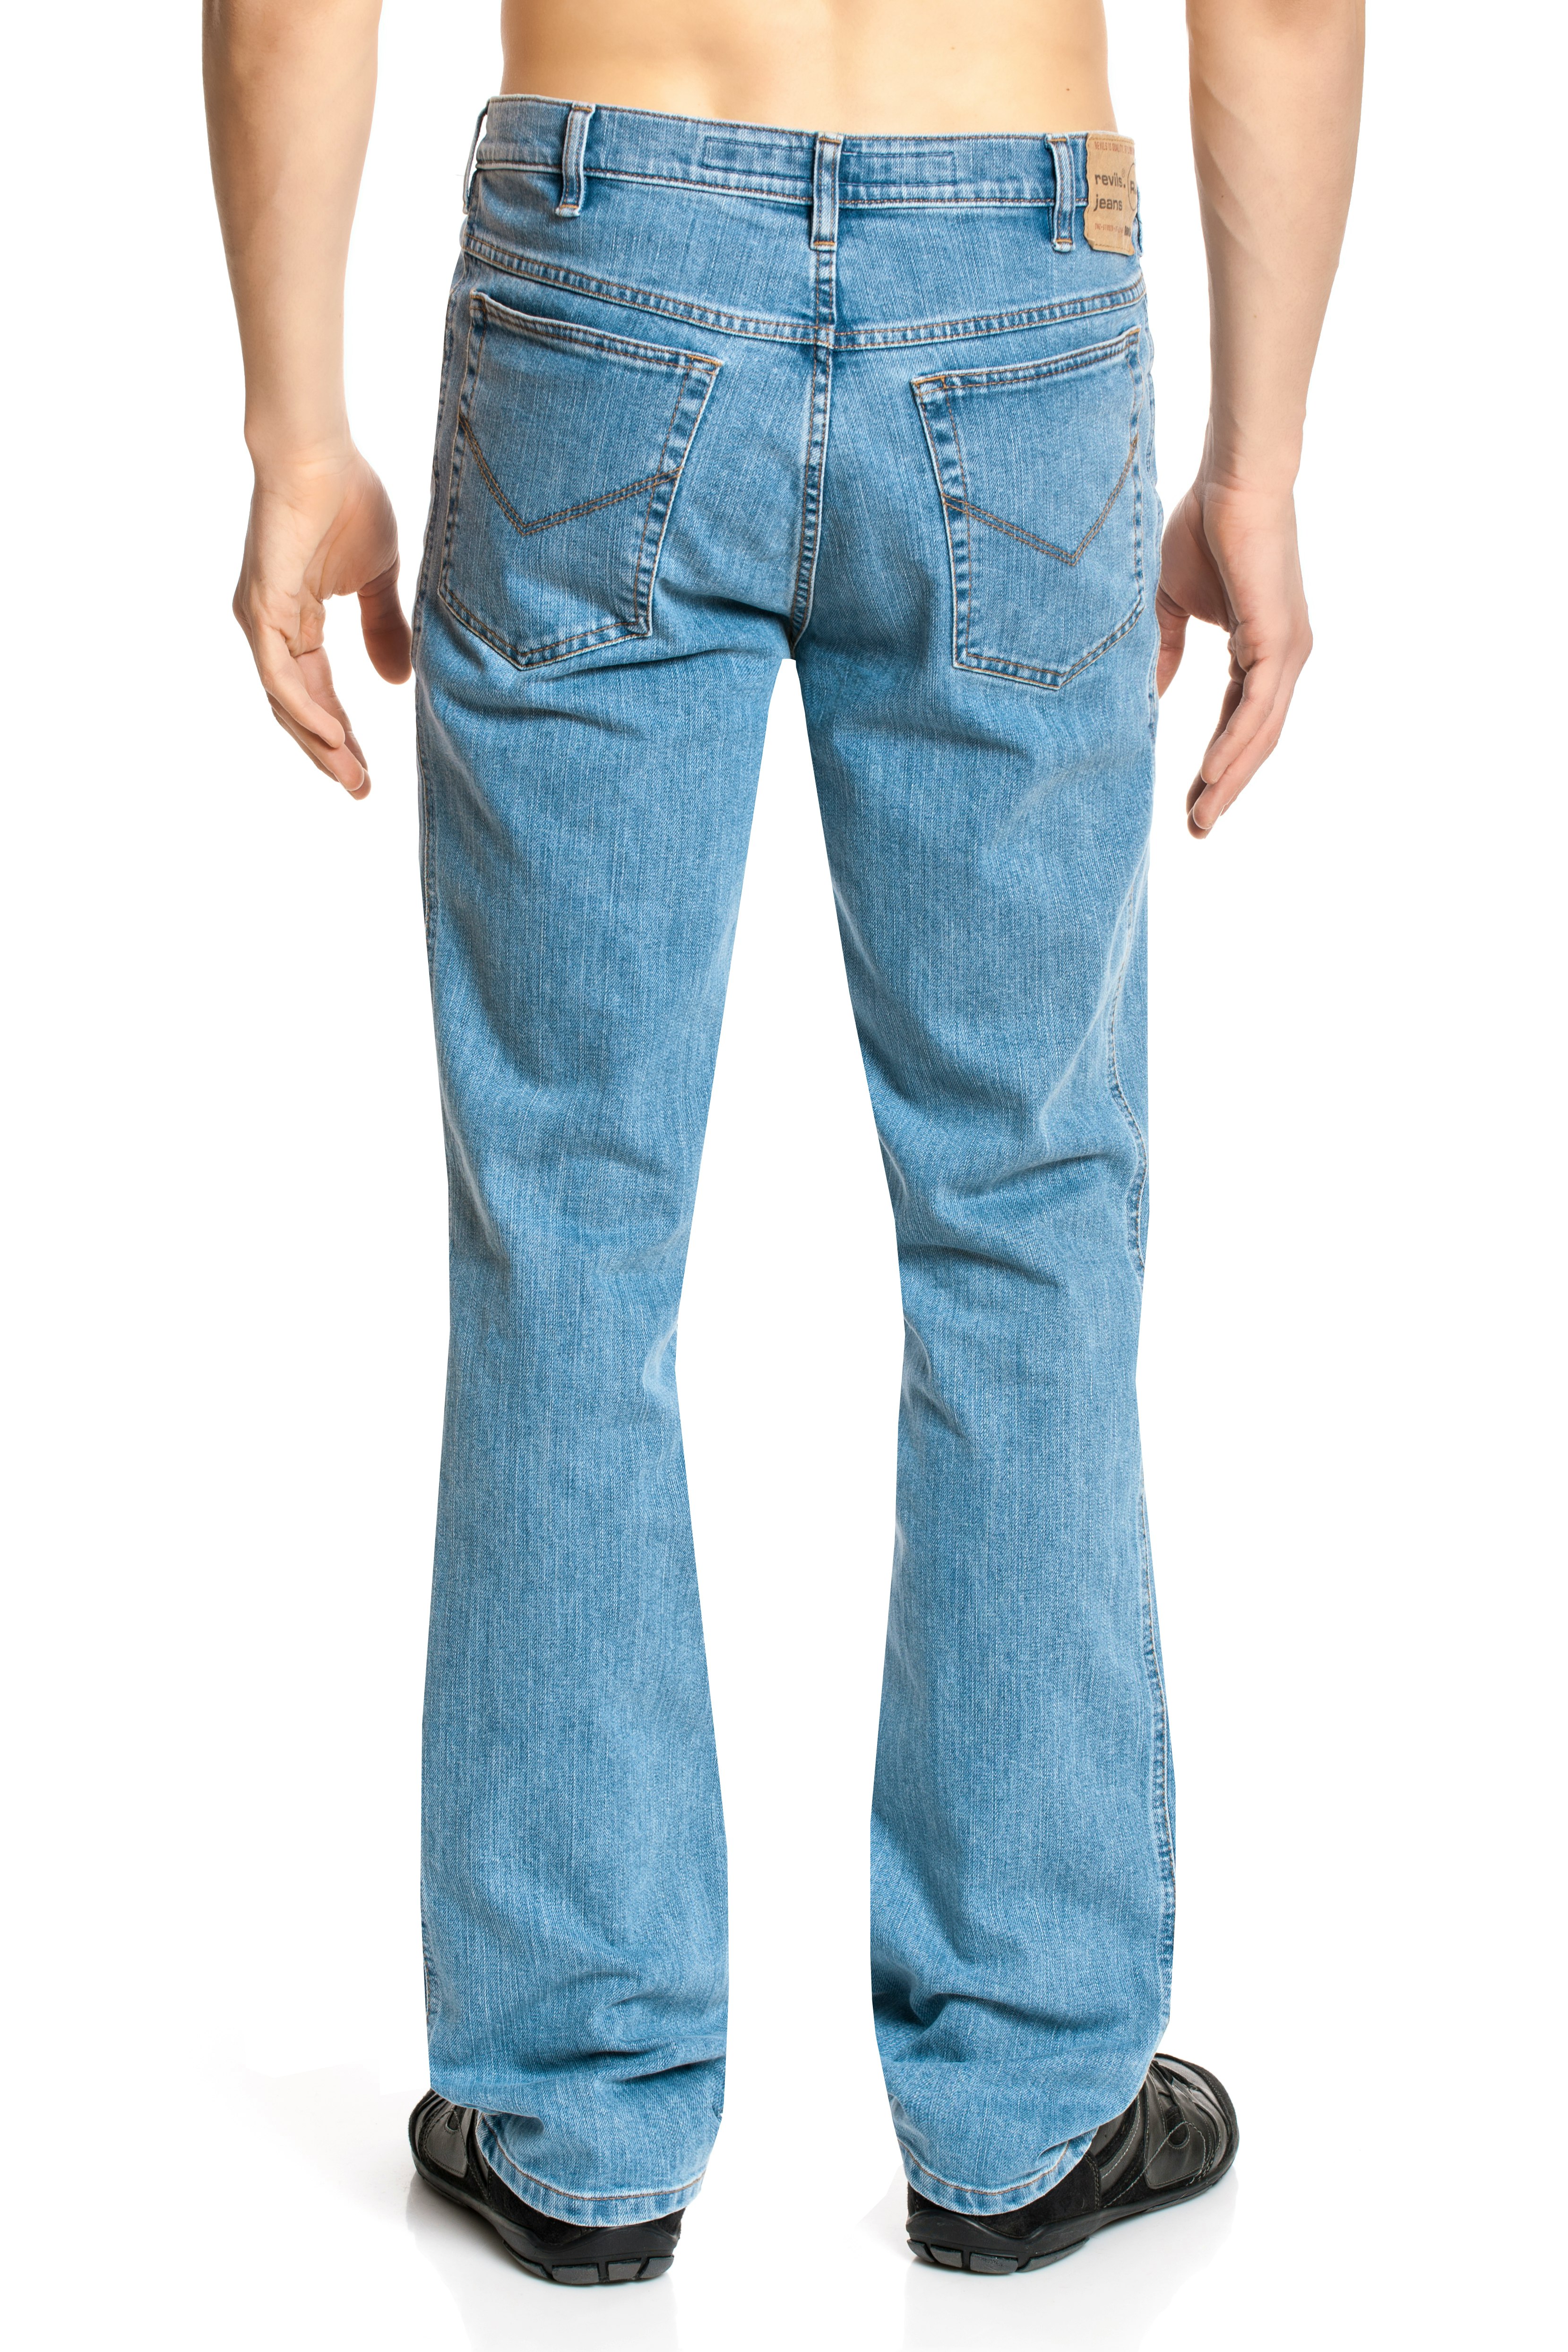 Revils 302 Five Pocket Classic Jeans bis Länge 38